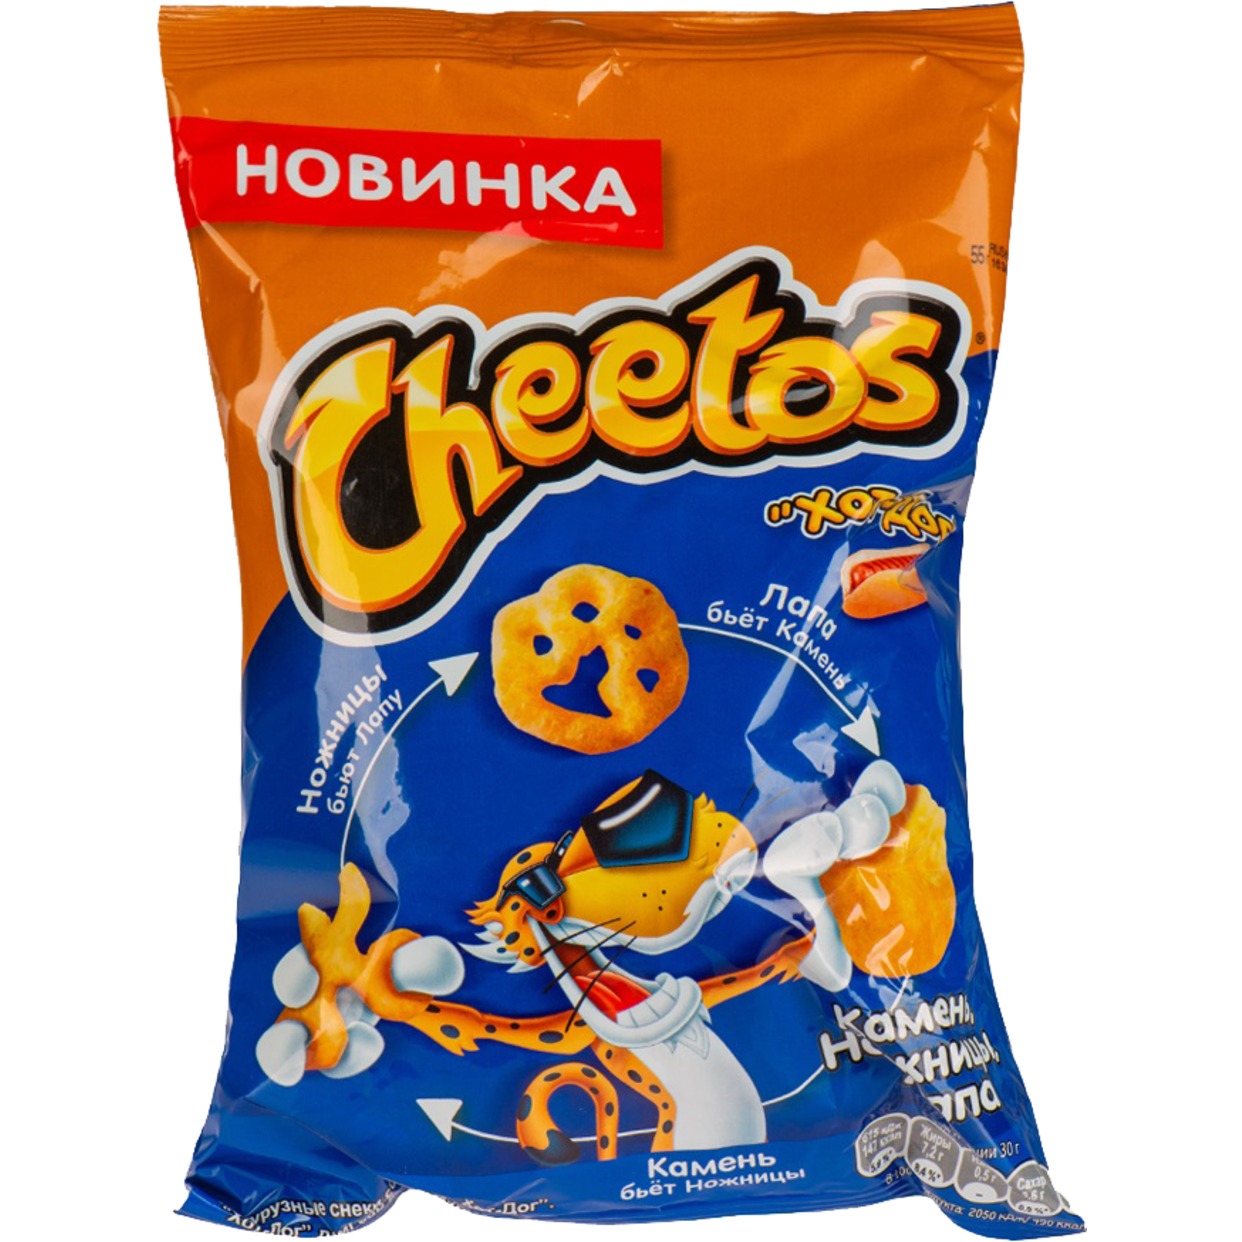 Кукурузные снеки Cheetos "Камень, Ножницы, Лапа" со вкусом "Хот-дог" 55г по акции в Пятерочке